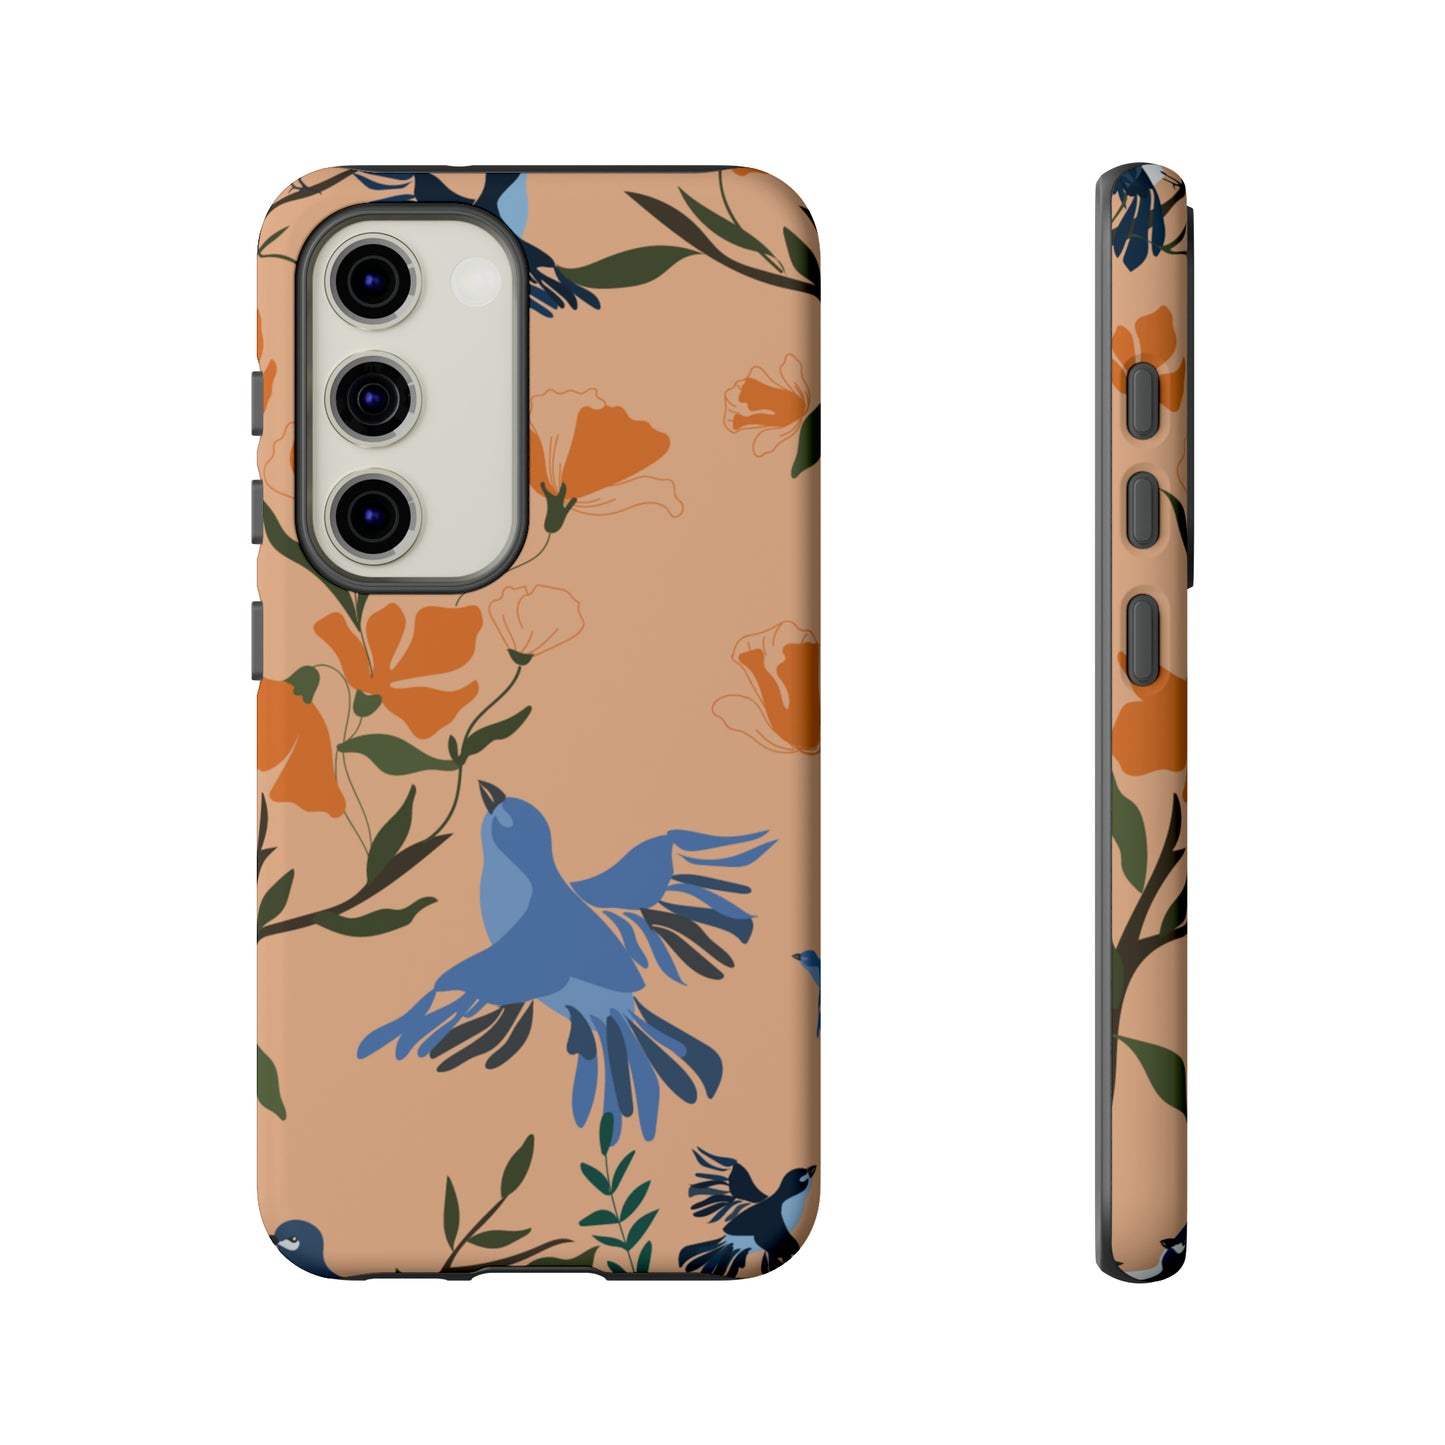 Joyful Blue Bird | Hardshell Dual Layer Phone Case